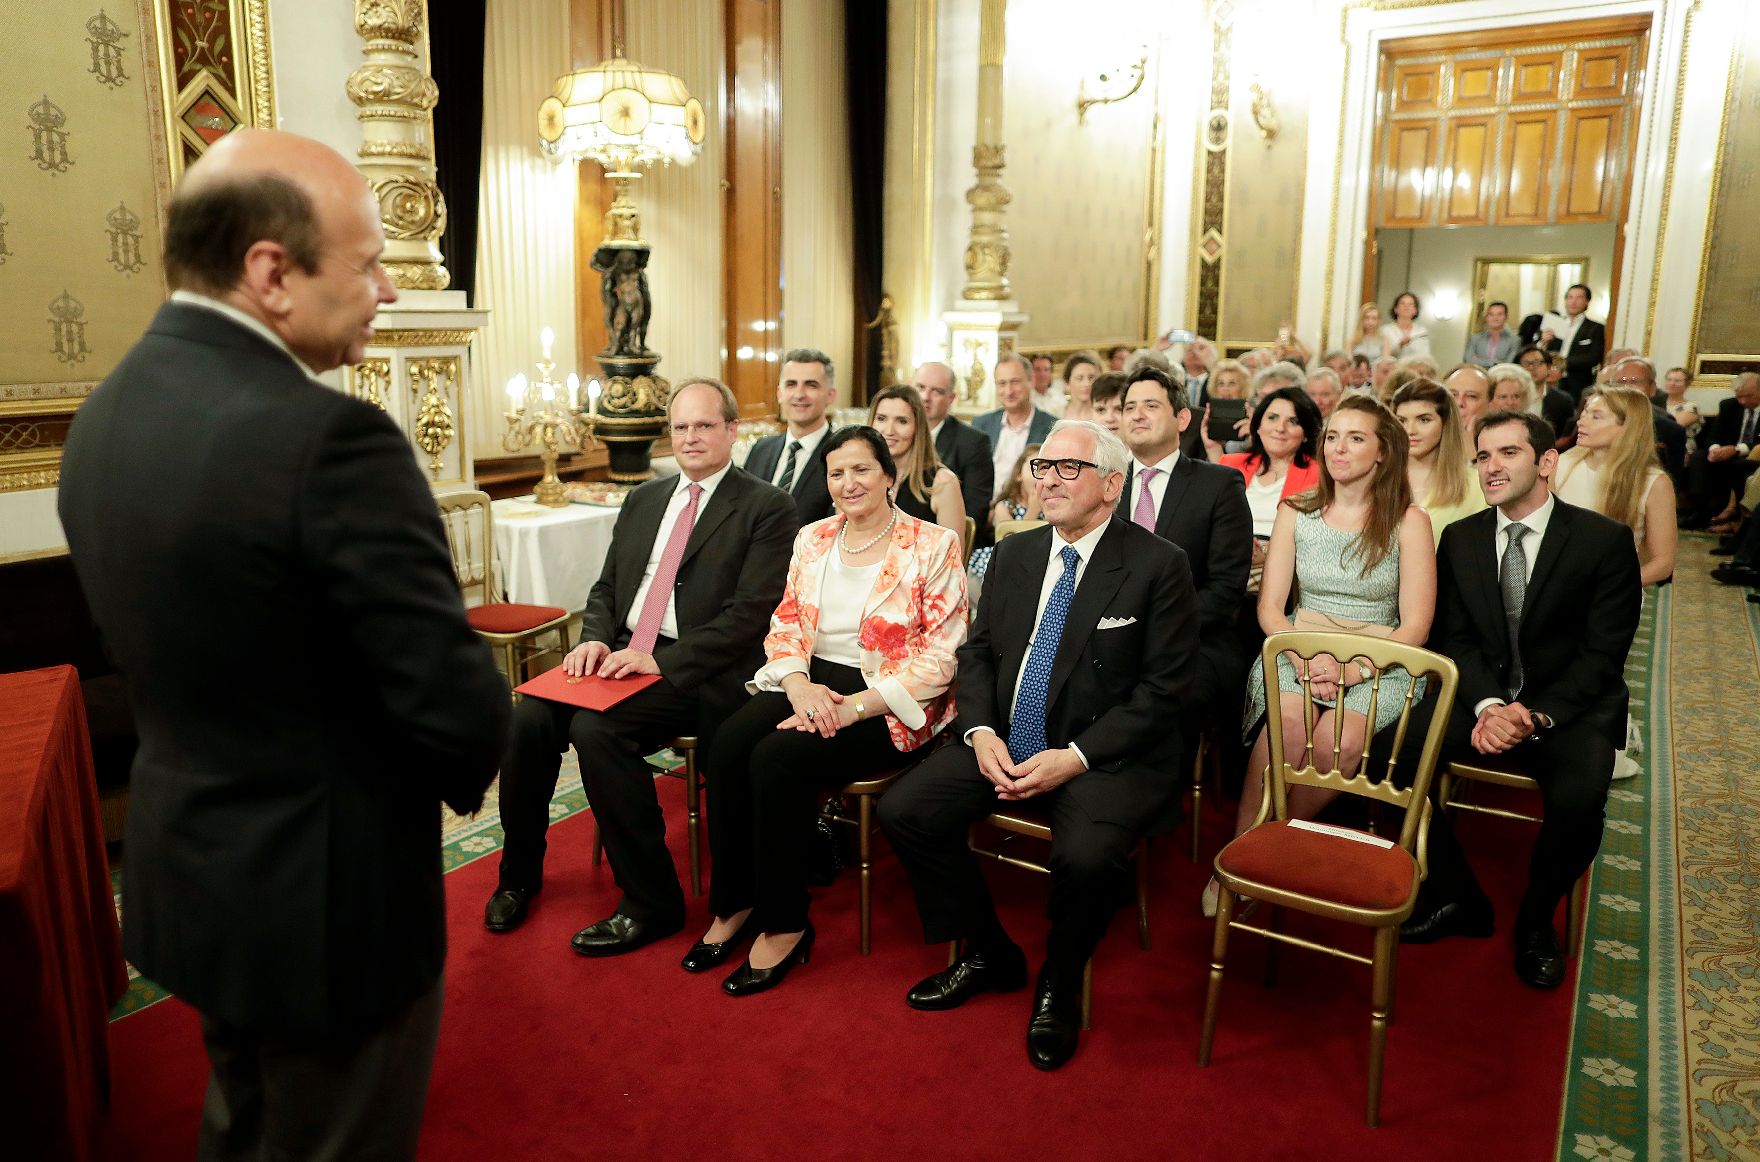 Am 21. Juni 2018 fand die Überreichung des Goldenen Ehrenzeichens für Verdienste um die Republik Österreich an Aki Nuredini statt. Im Bild der Direktor der Staatsoper und Laudator Dominique Meyer (l.).